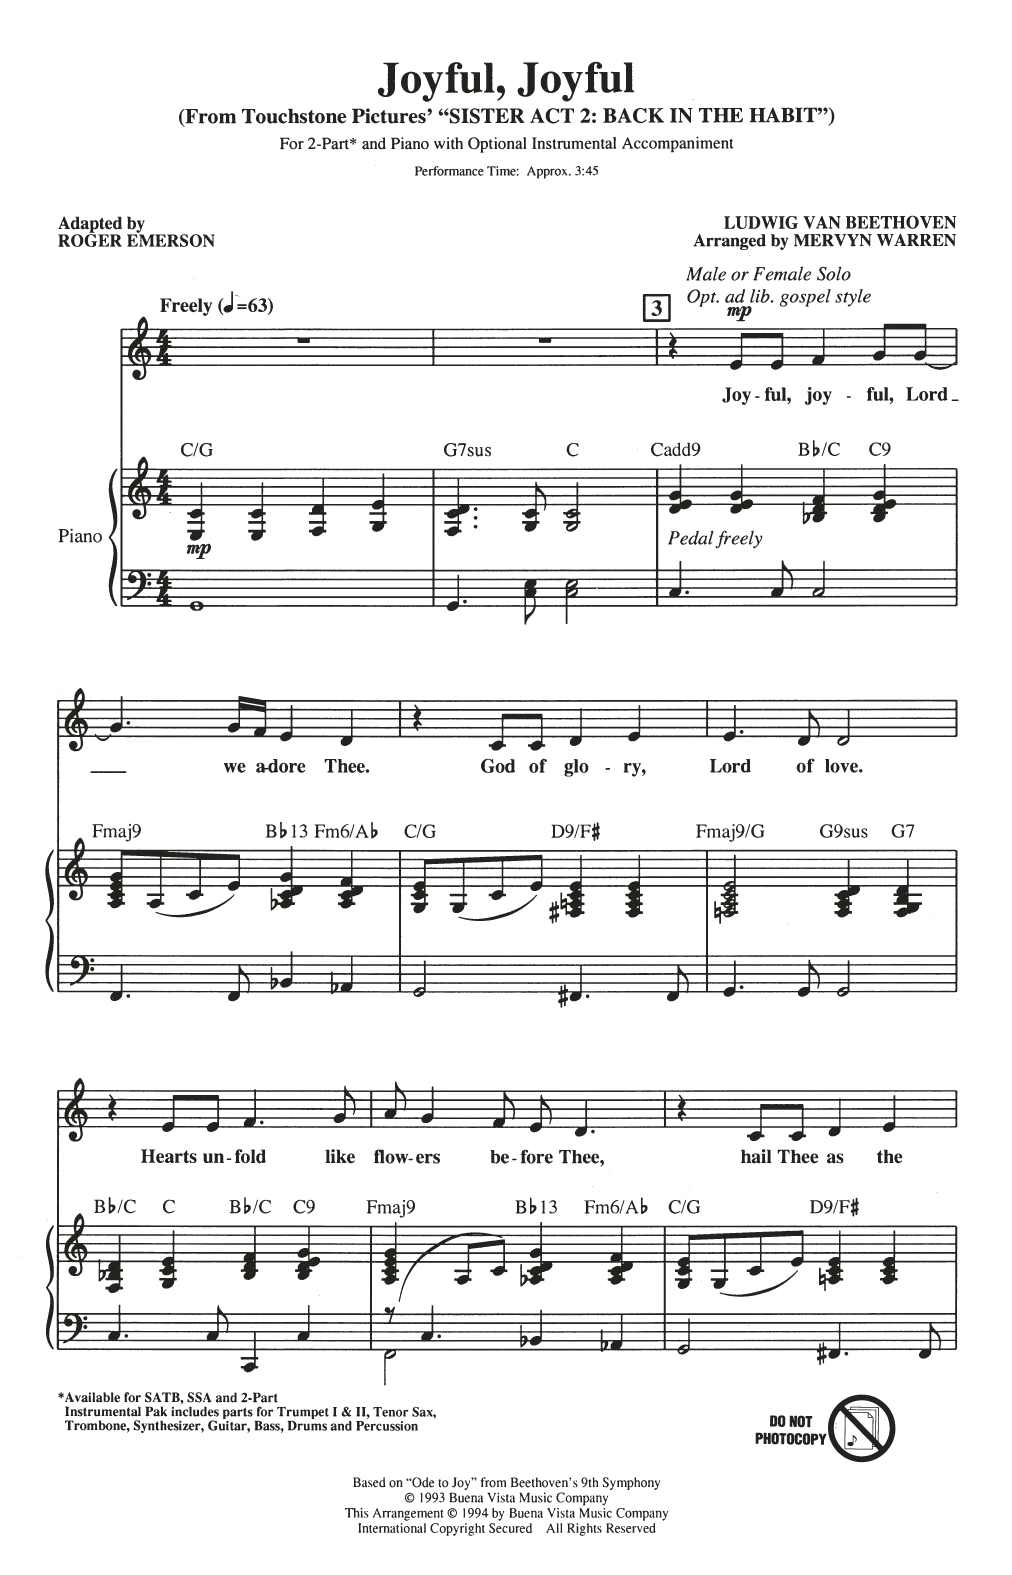 Mervyn Warren Joyful, Joyful (from Sister Act 2) (arr. Roger Emerson) sheet music notes and chords arranged for SSA Choir